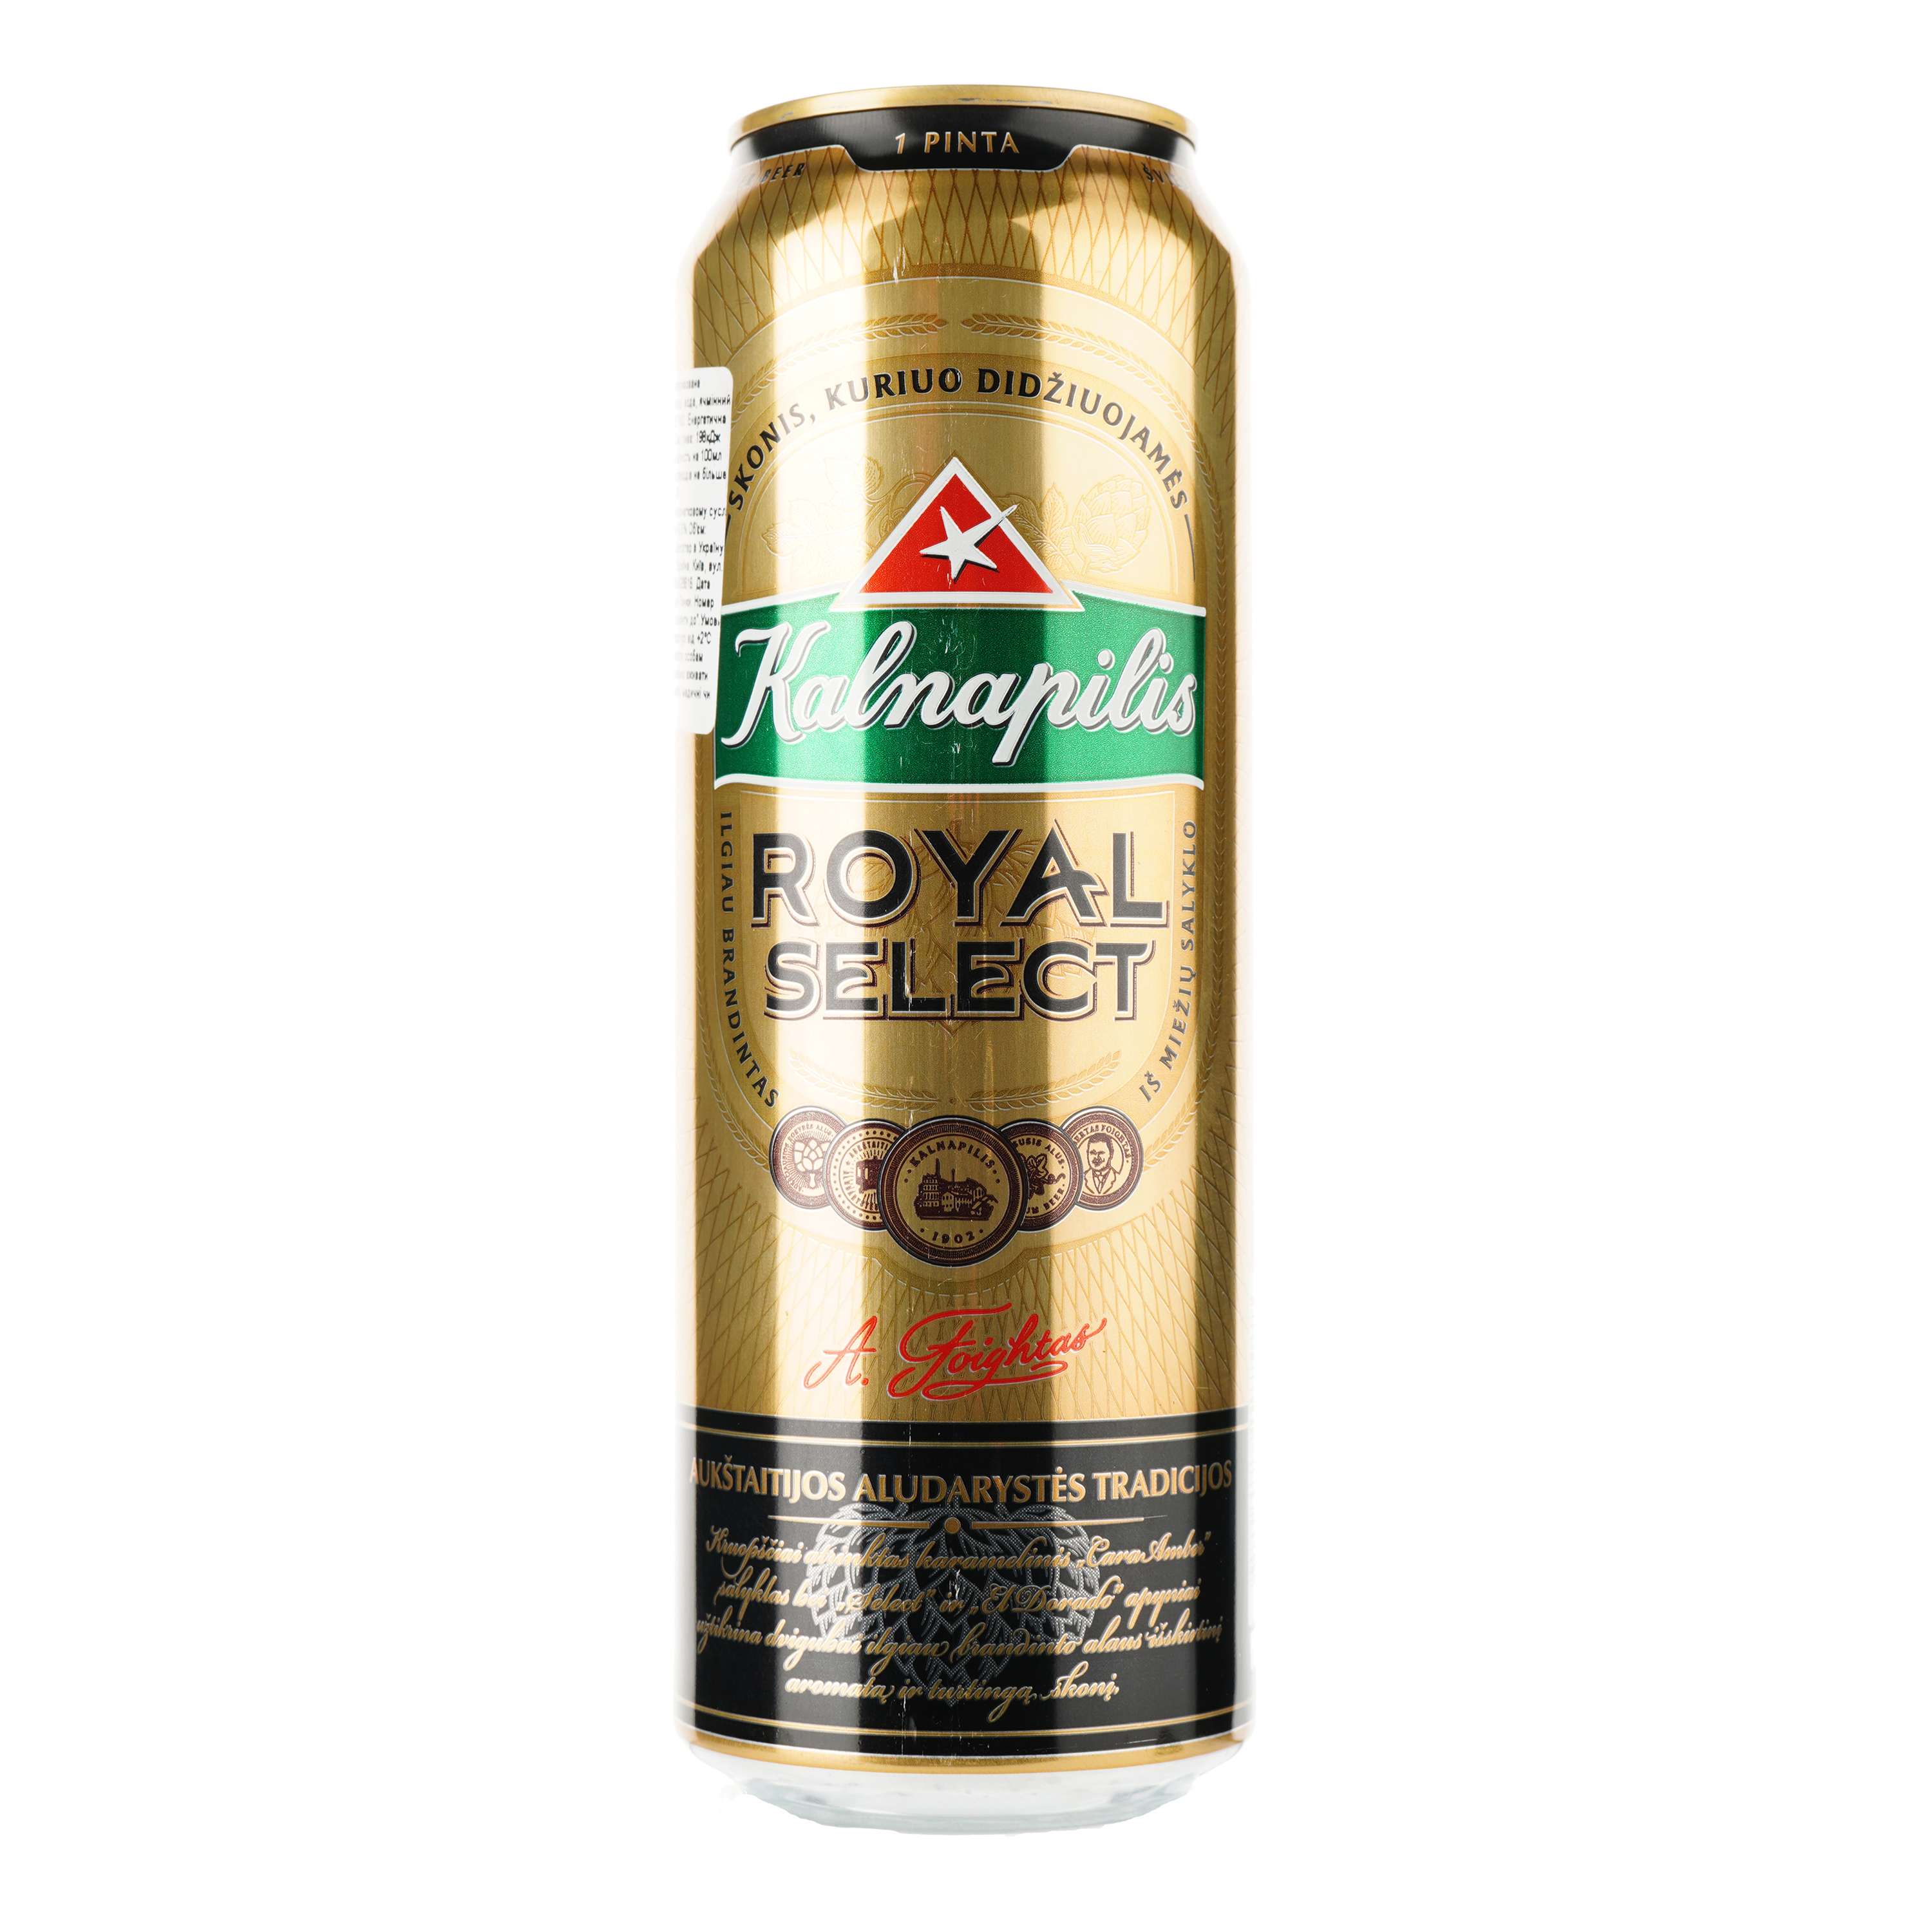 Пиво Kalnapilis Royal Select світле, 5.6%, з/б, 0.568 л - фото 1